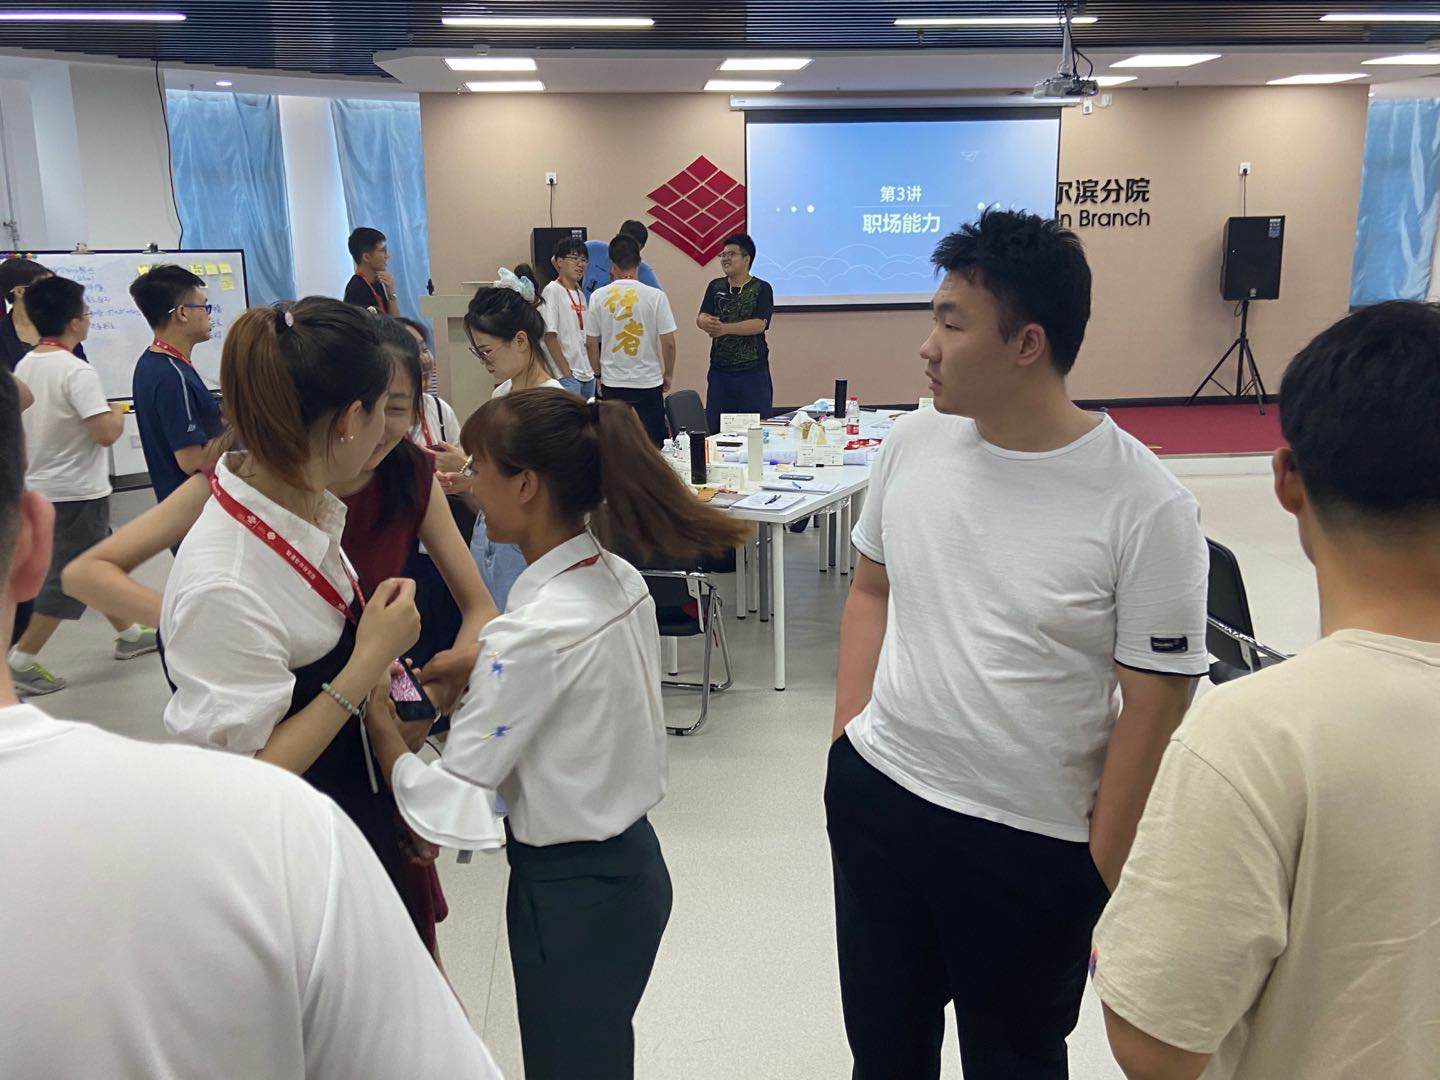 7月29日宋奕晓老师为哈尔滨联通能源科技有限公司新员工讲授《新员工角色转换》圆满完成